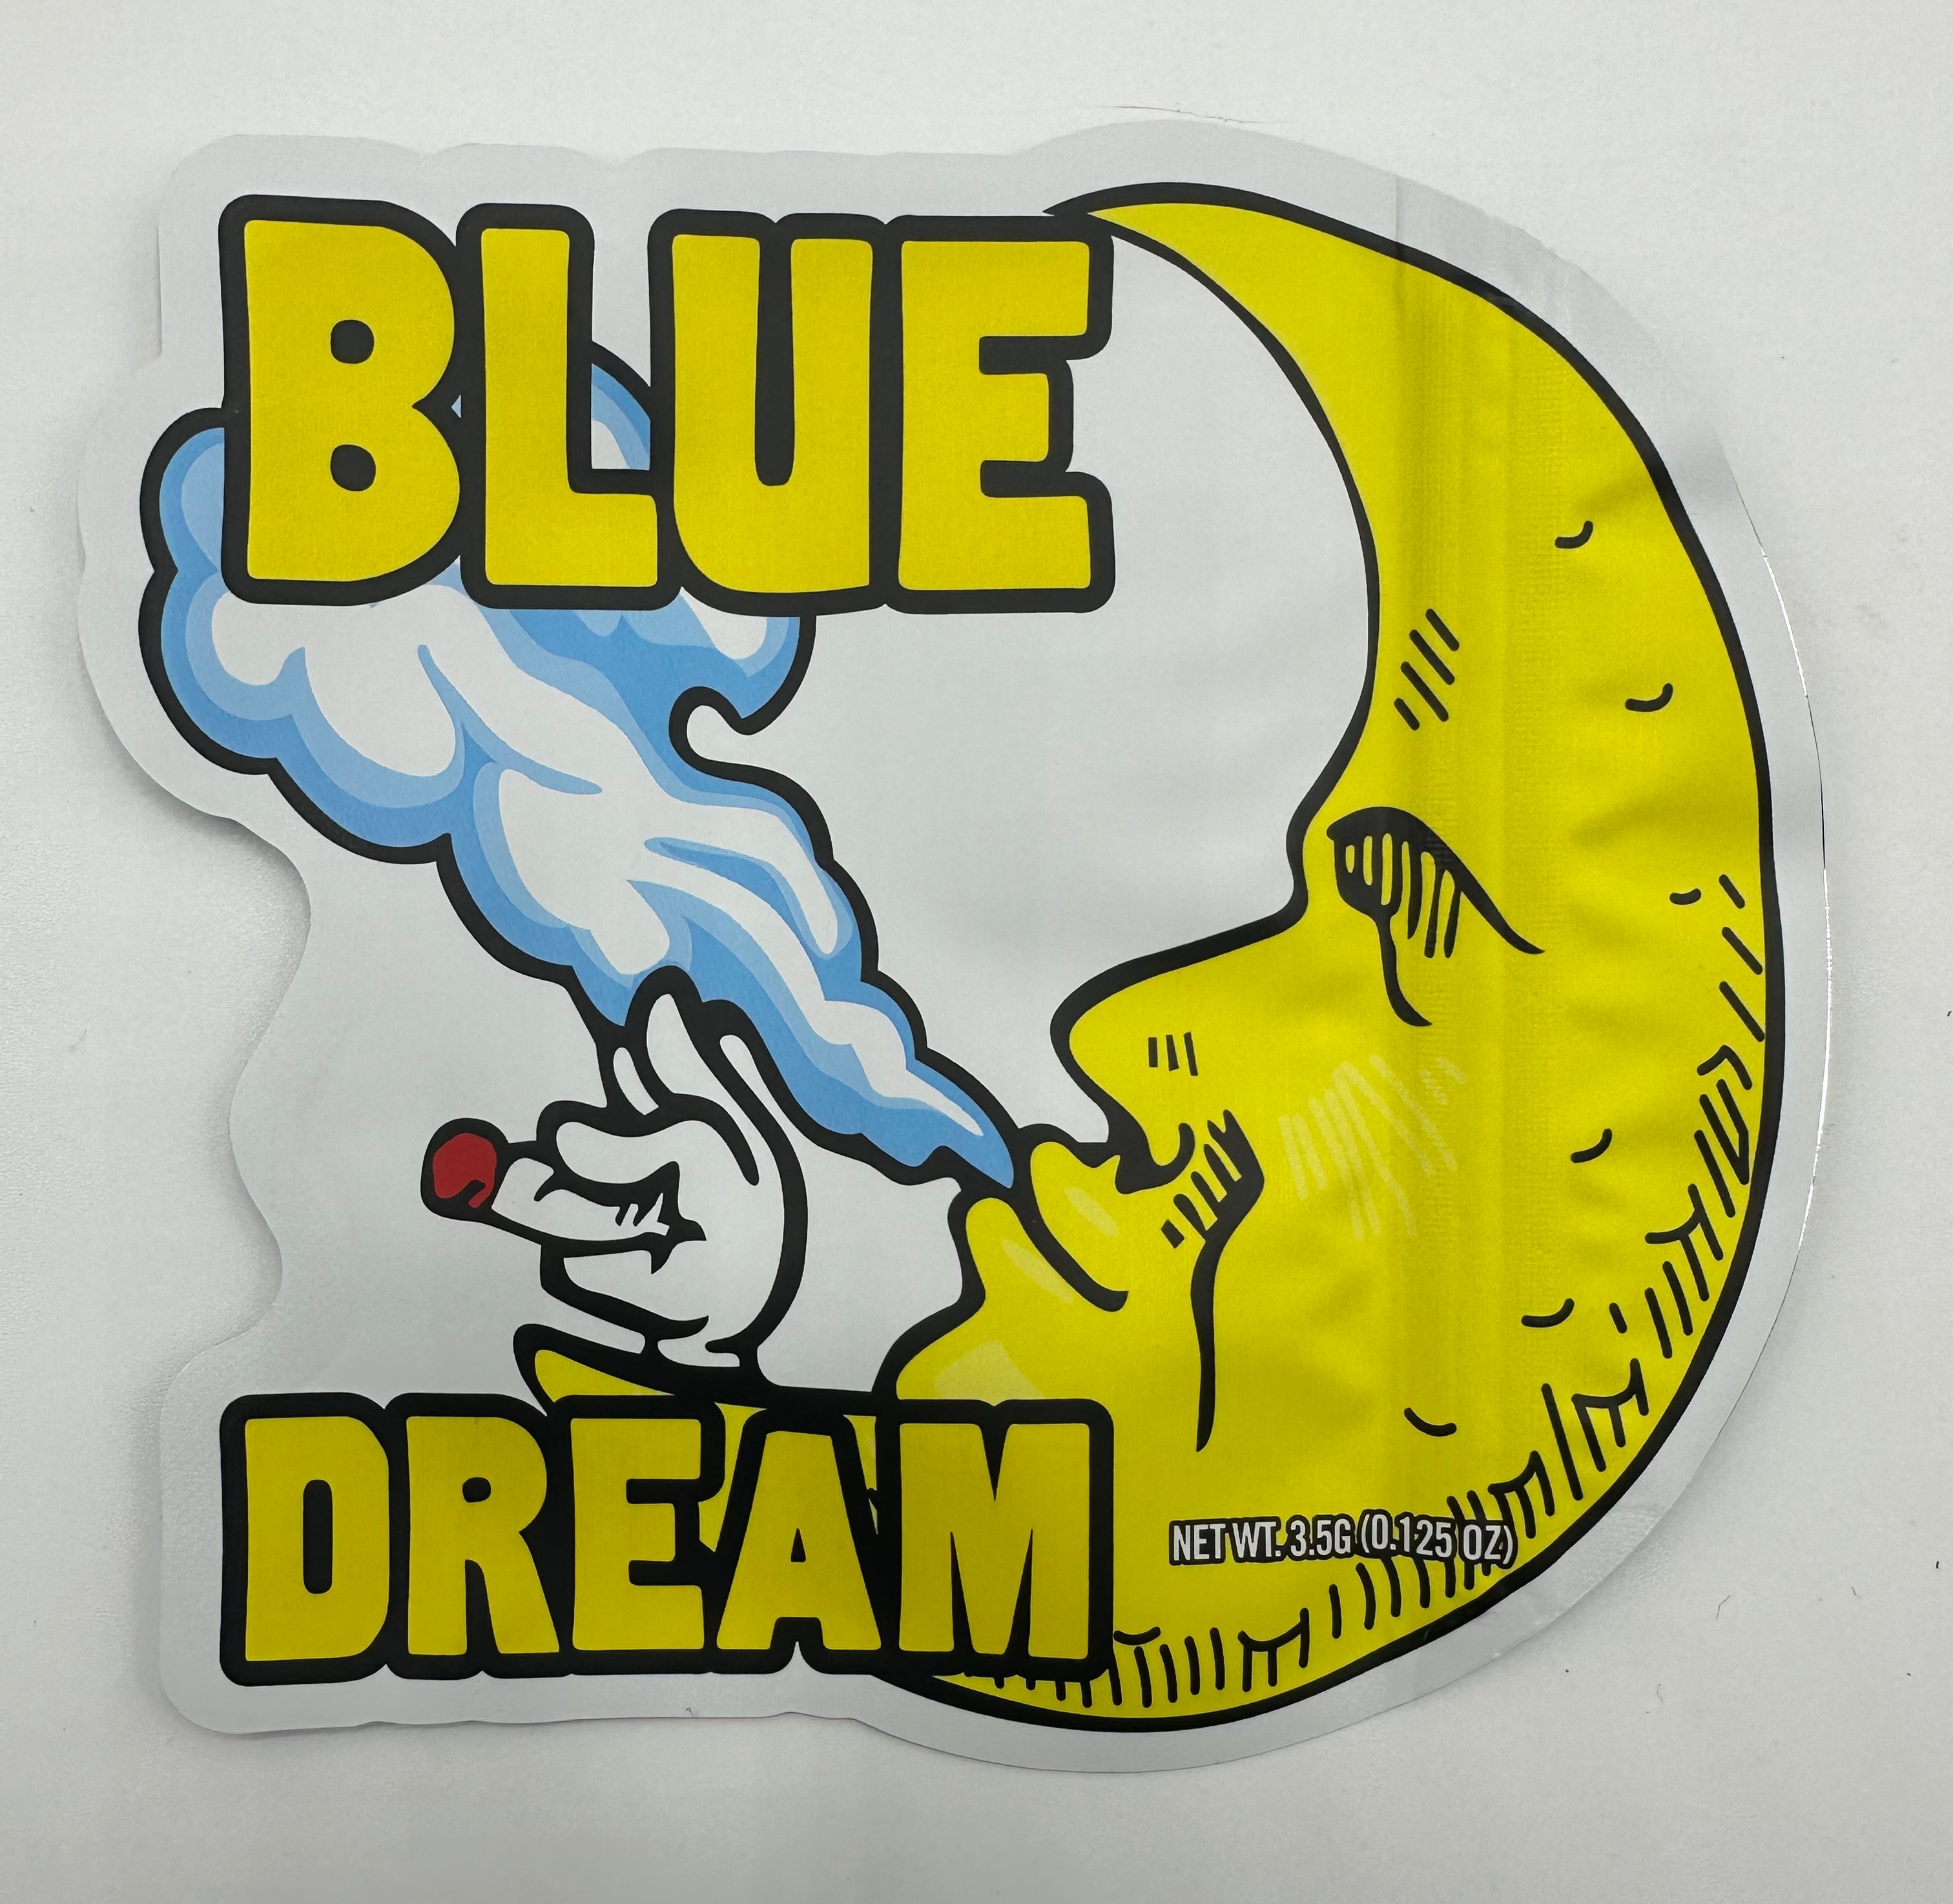 3D Blue Dream OG 3.5g Mylar Bags